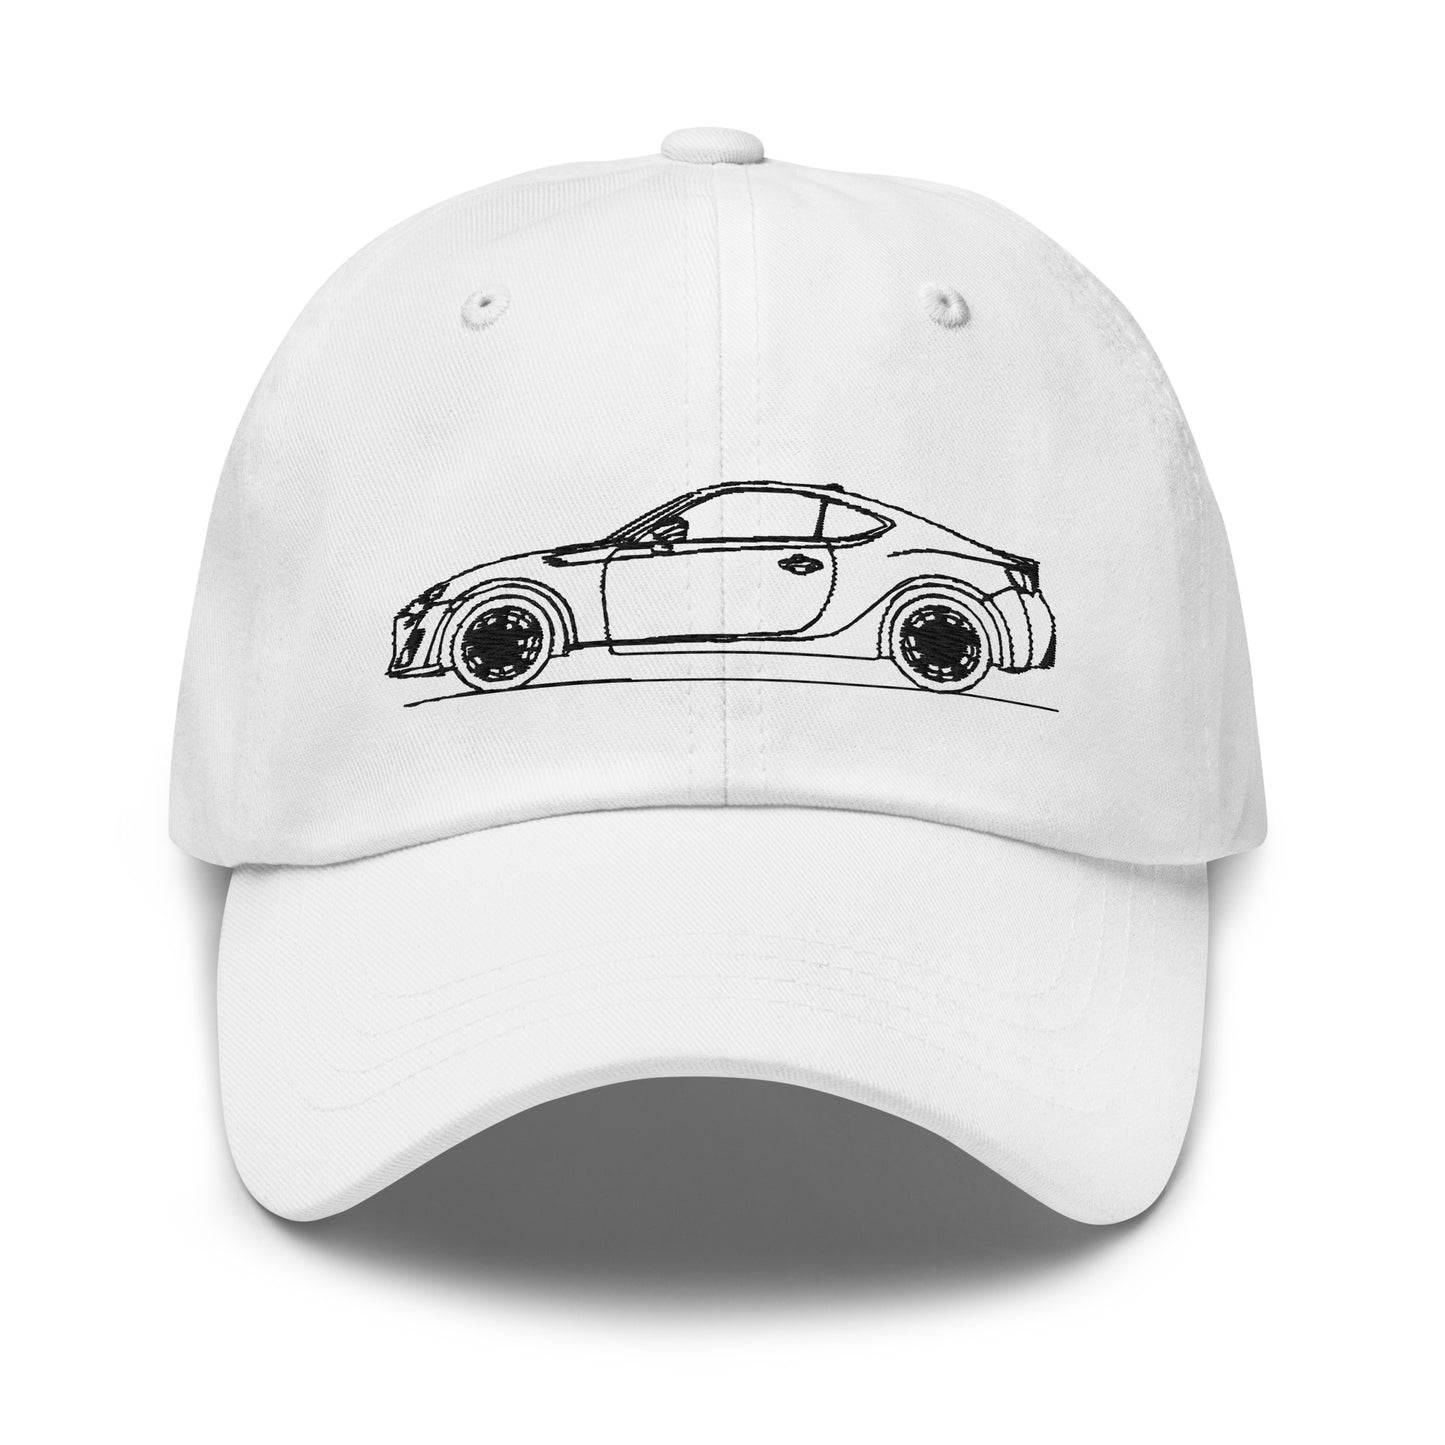 Toyota 86 / Subaru BRZ / Scion FRS first gen - Dad Hat